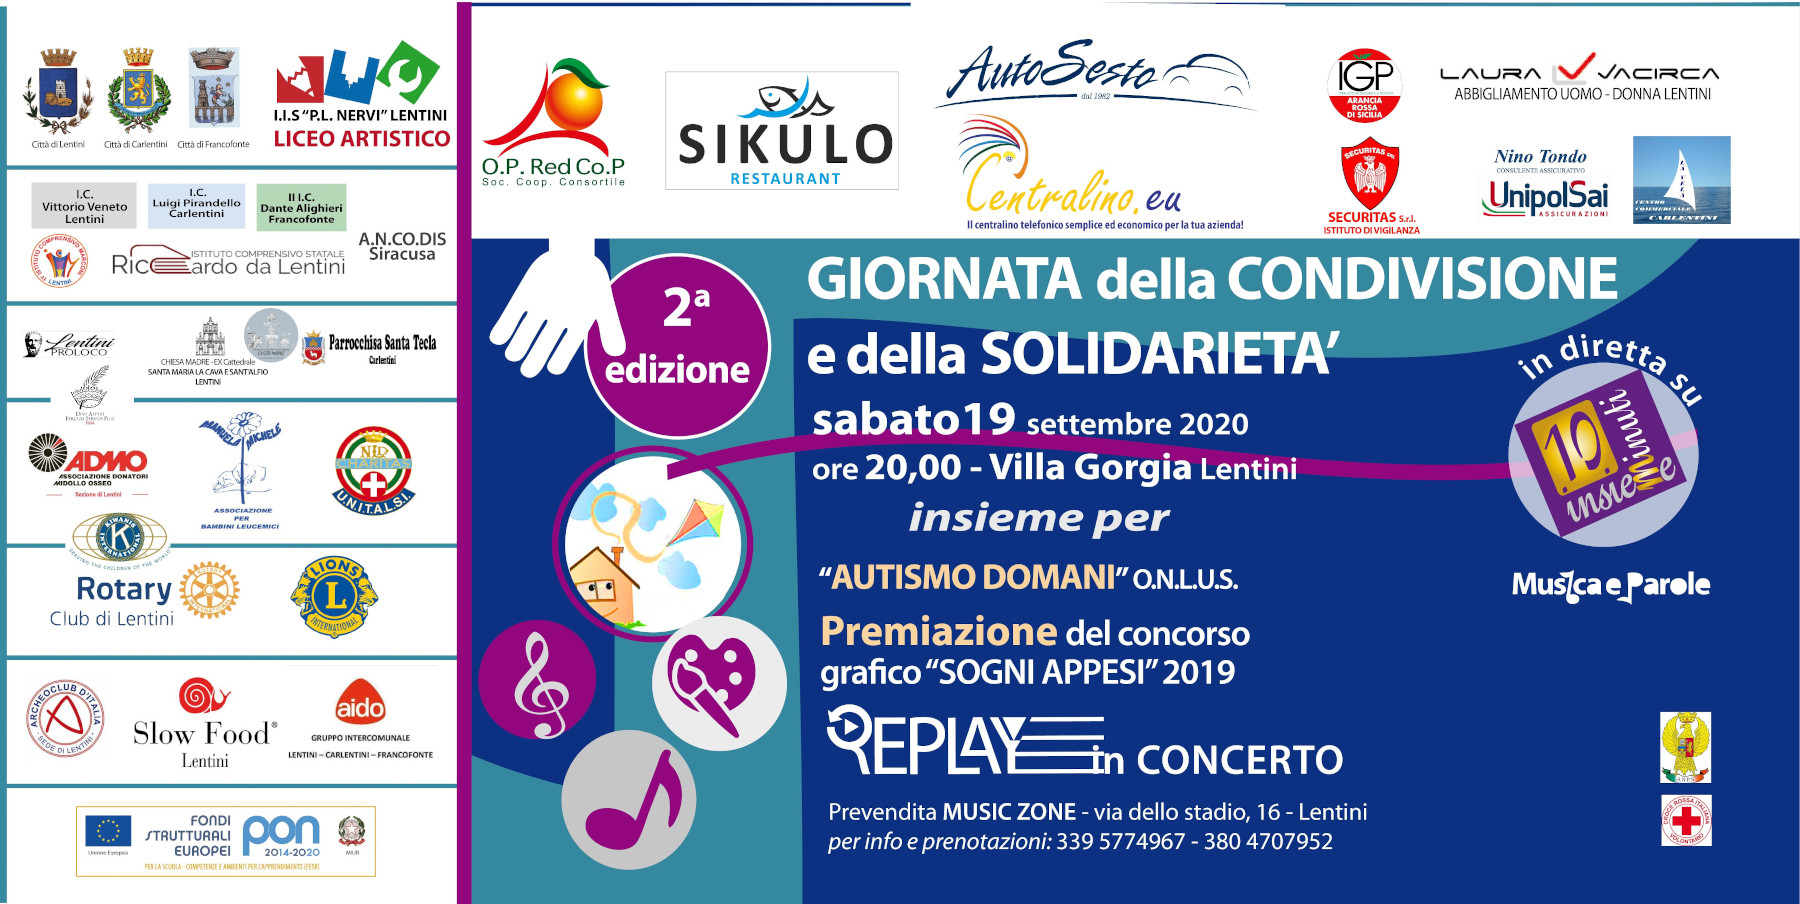 Centralino.eu sponsor dell'evento "Giornata della condivisione e della solidarietà"